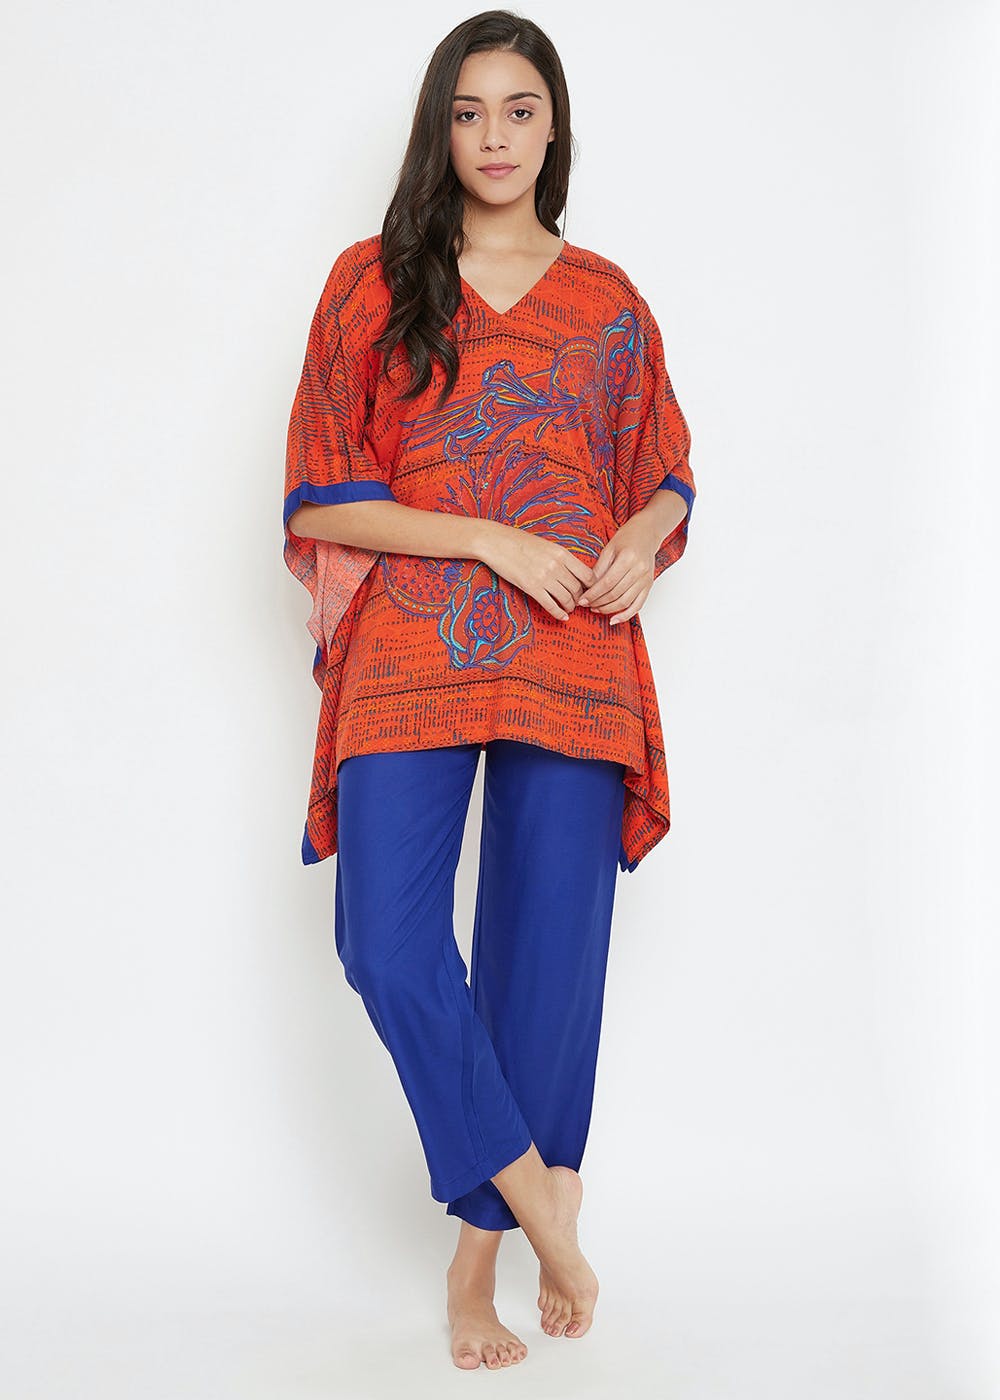 Get Blue Bird Kaftan Pyjama Set at ₹ 1999 | LBB Shop